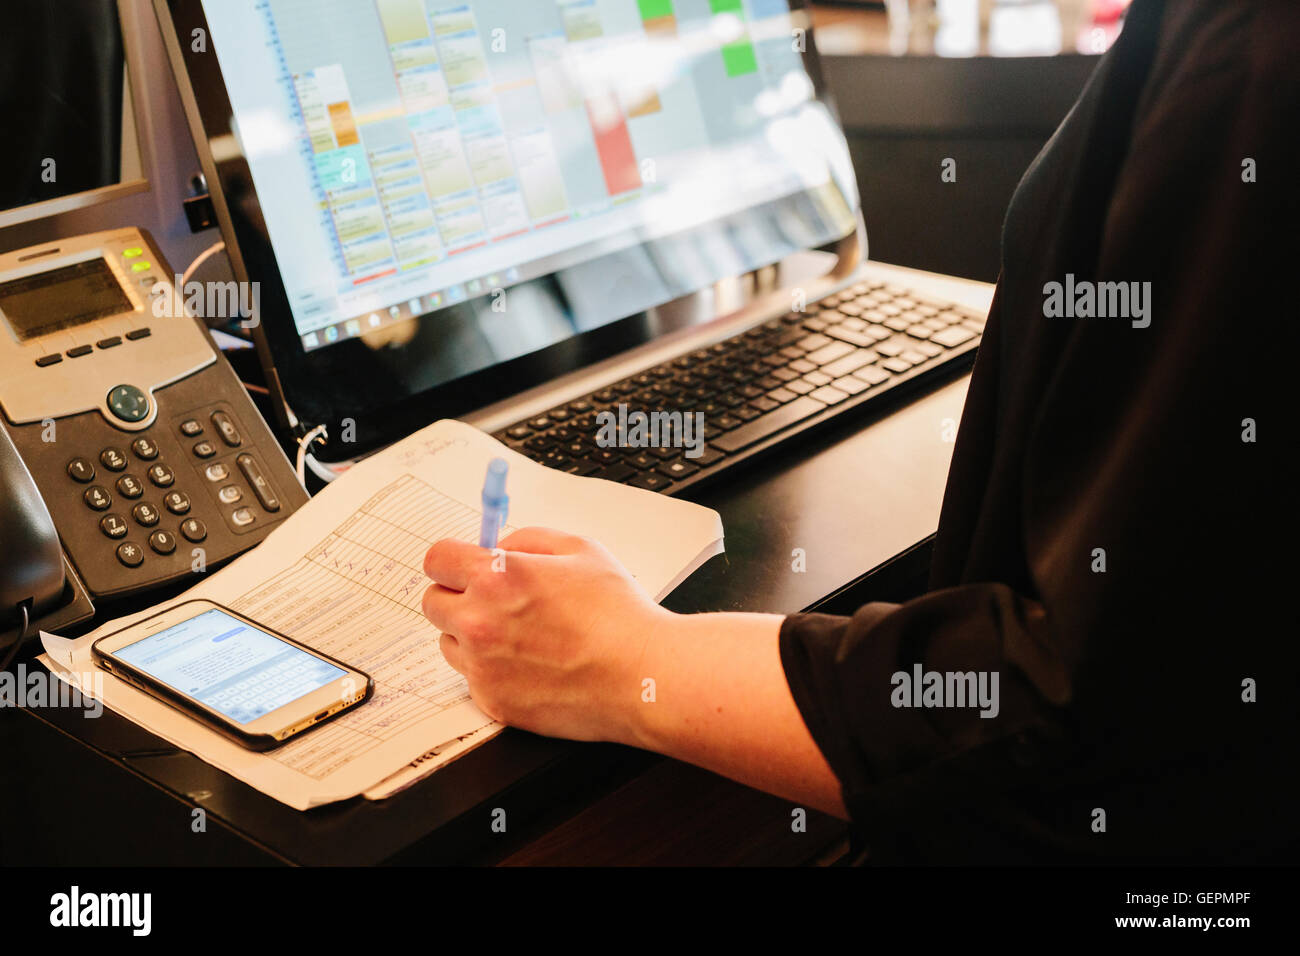 Eine Person arbeitet an einem Haar Salon Rezeption, Laptop-Computer, Festnetz-Telefon, Tagebuch und Smartphone auf dem Schreibtisch. Stockfoto